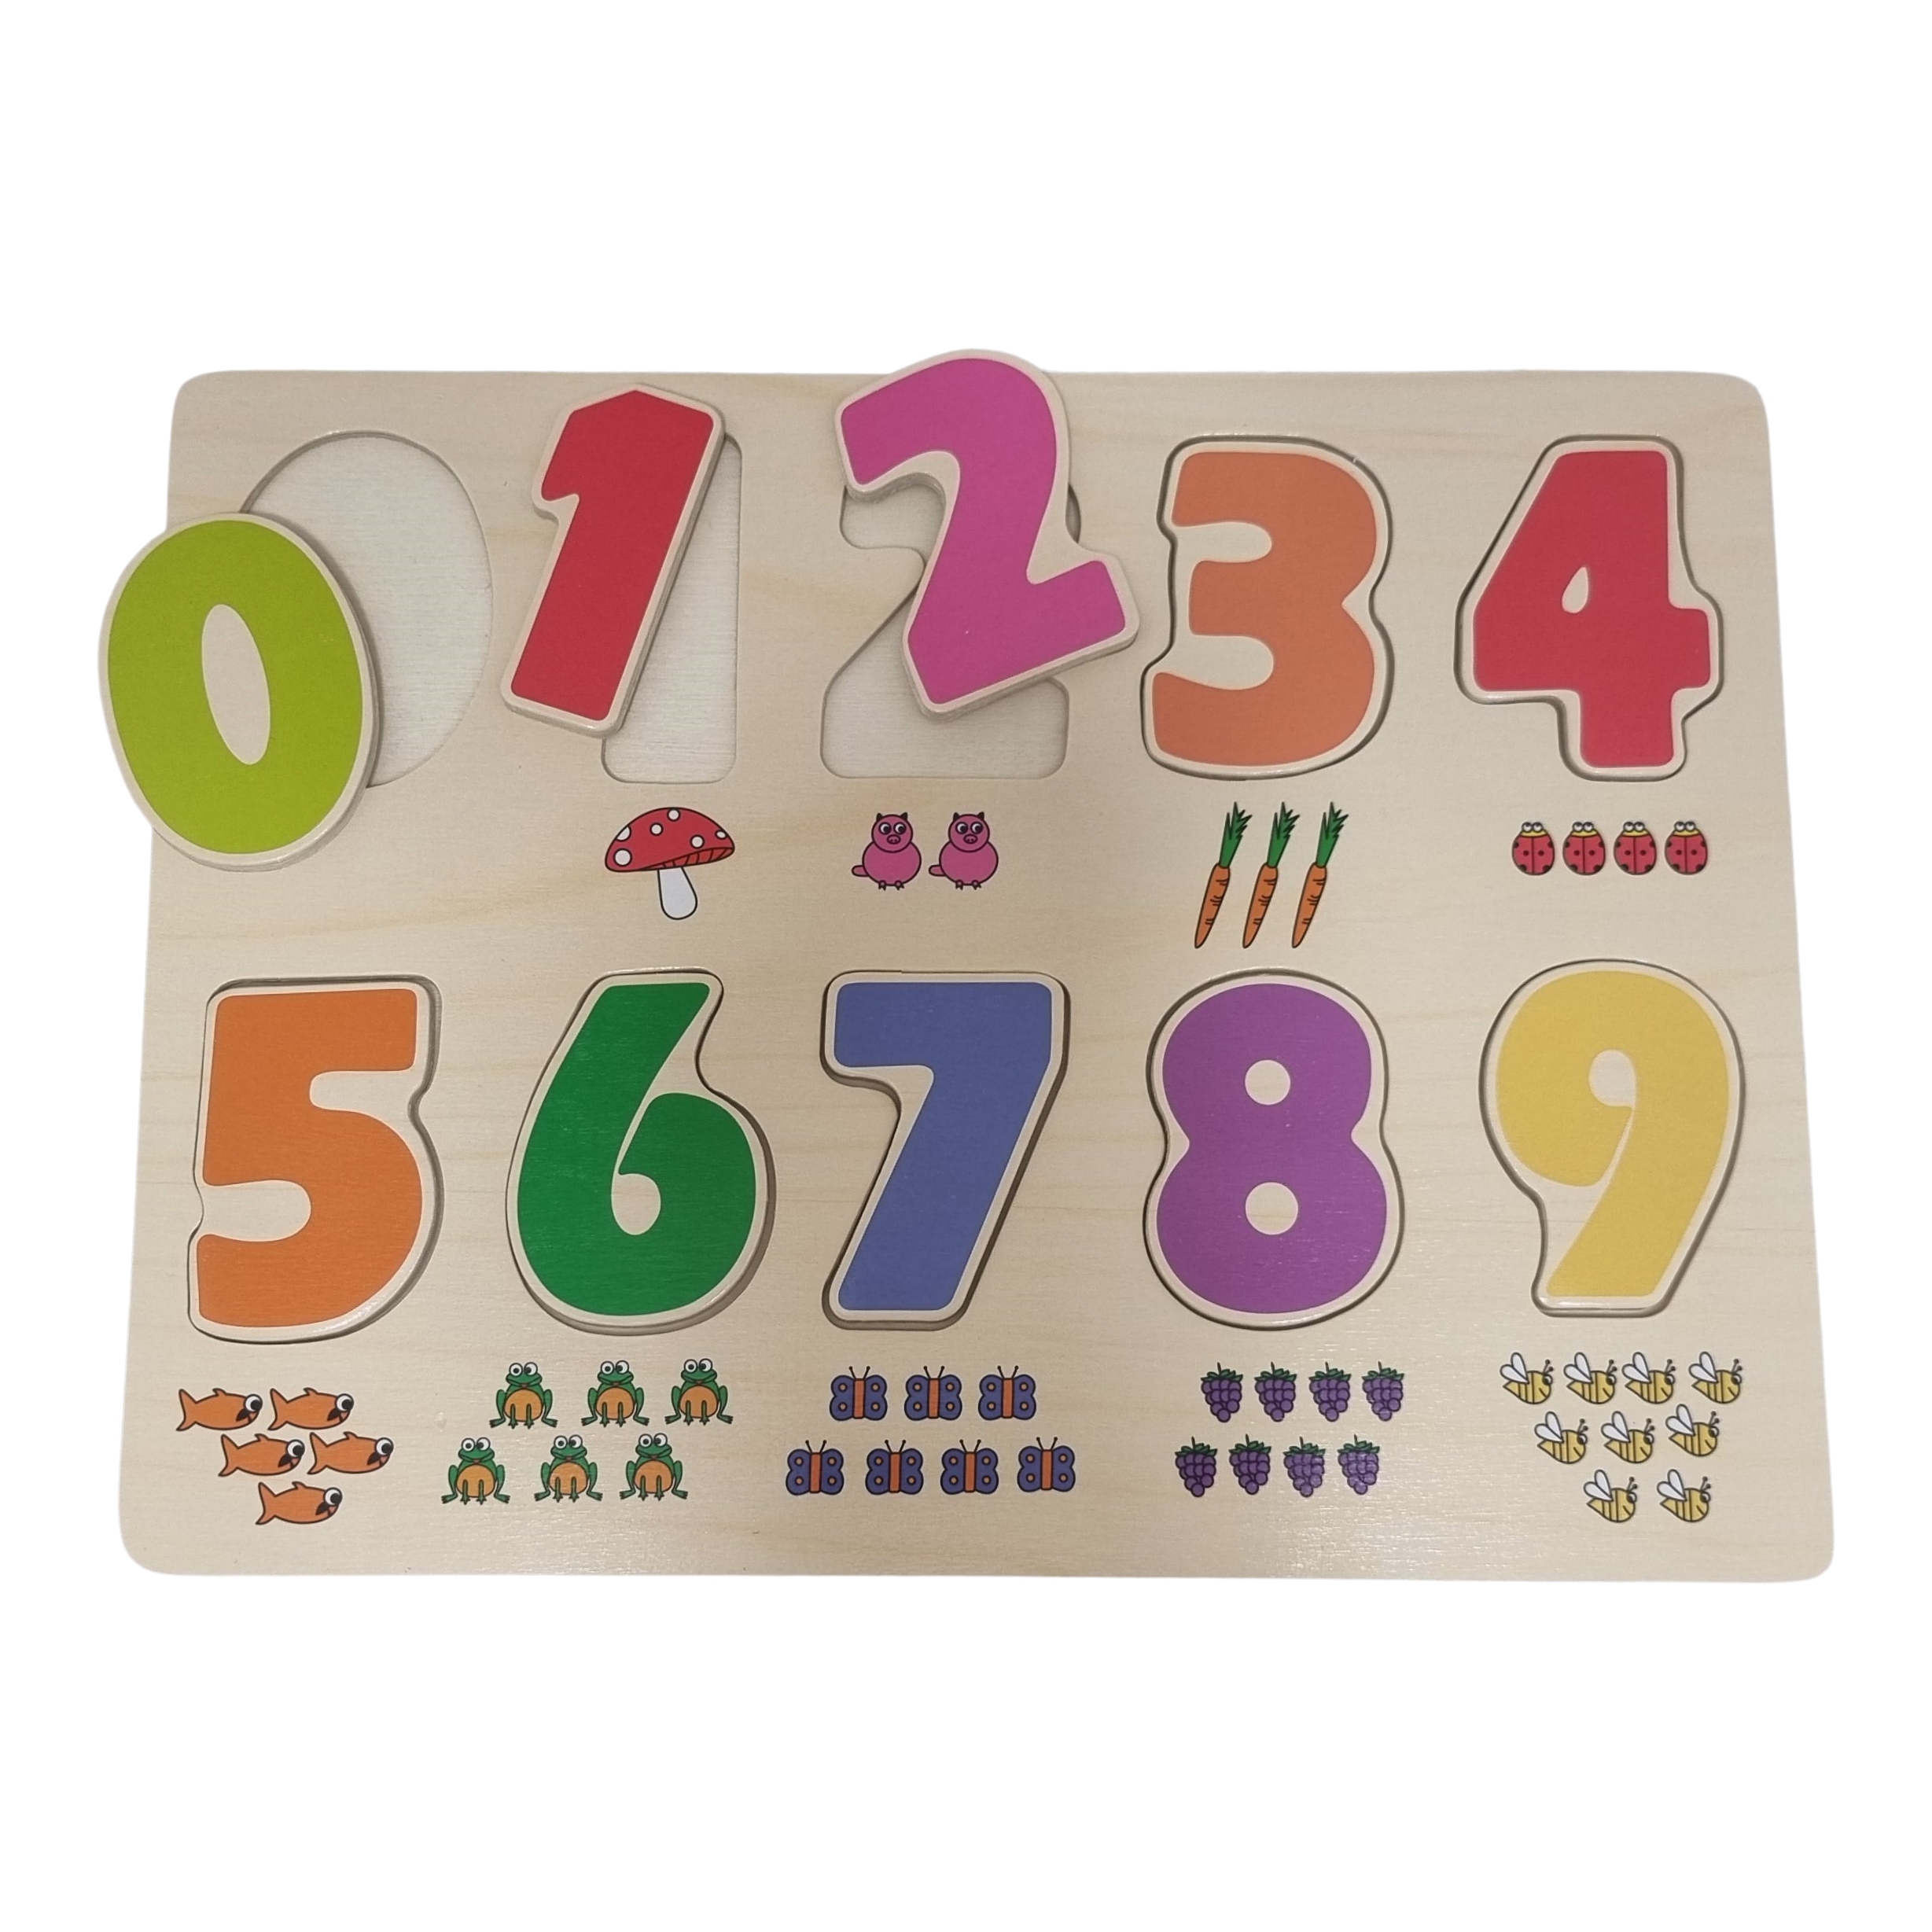 Puzzel cijfers 0-9 met figuren